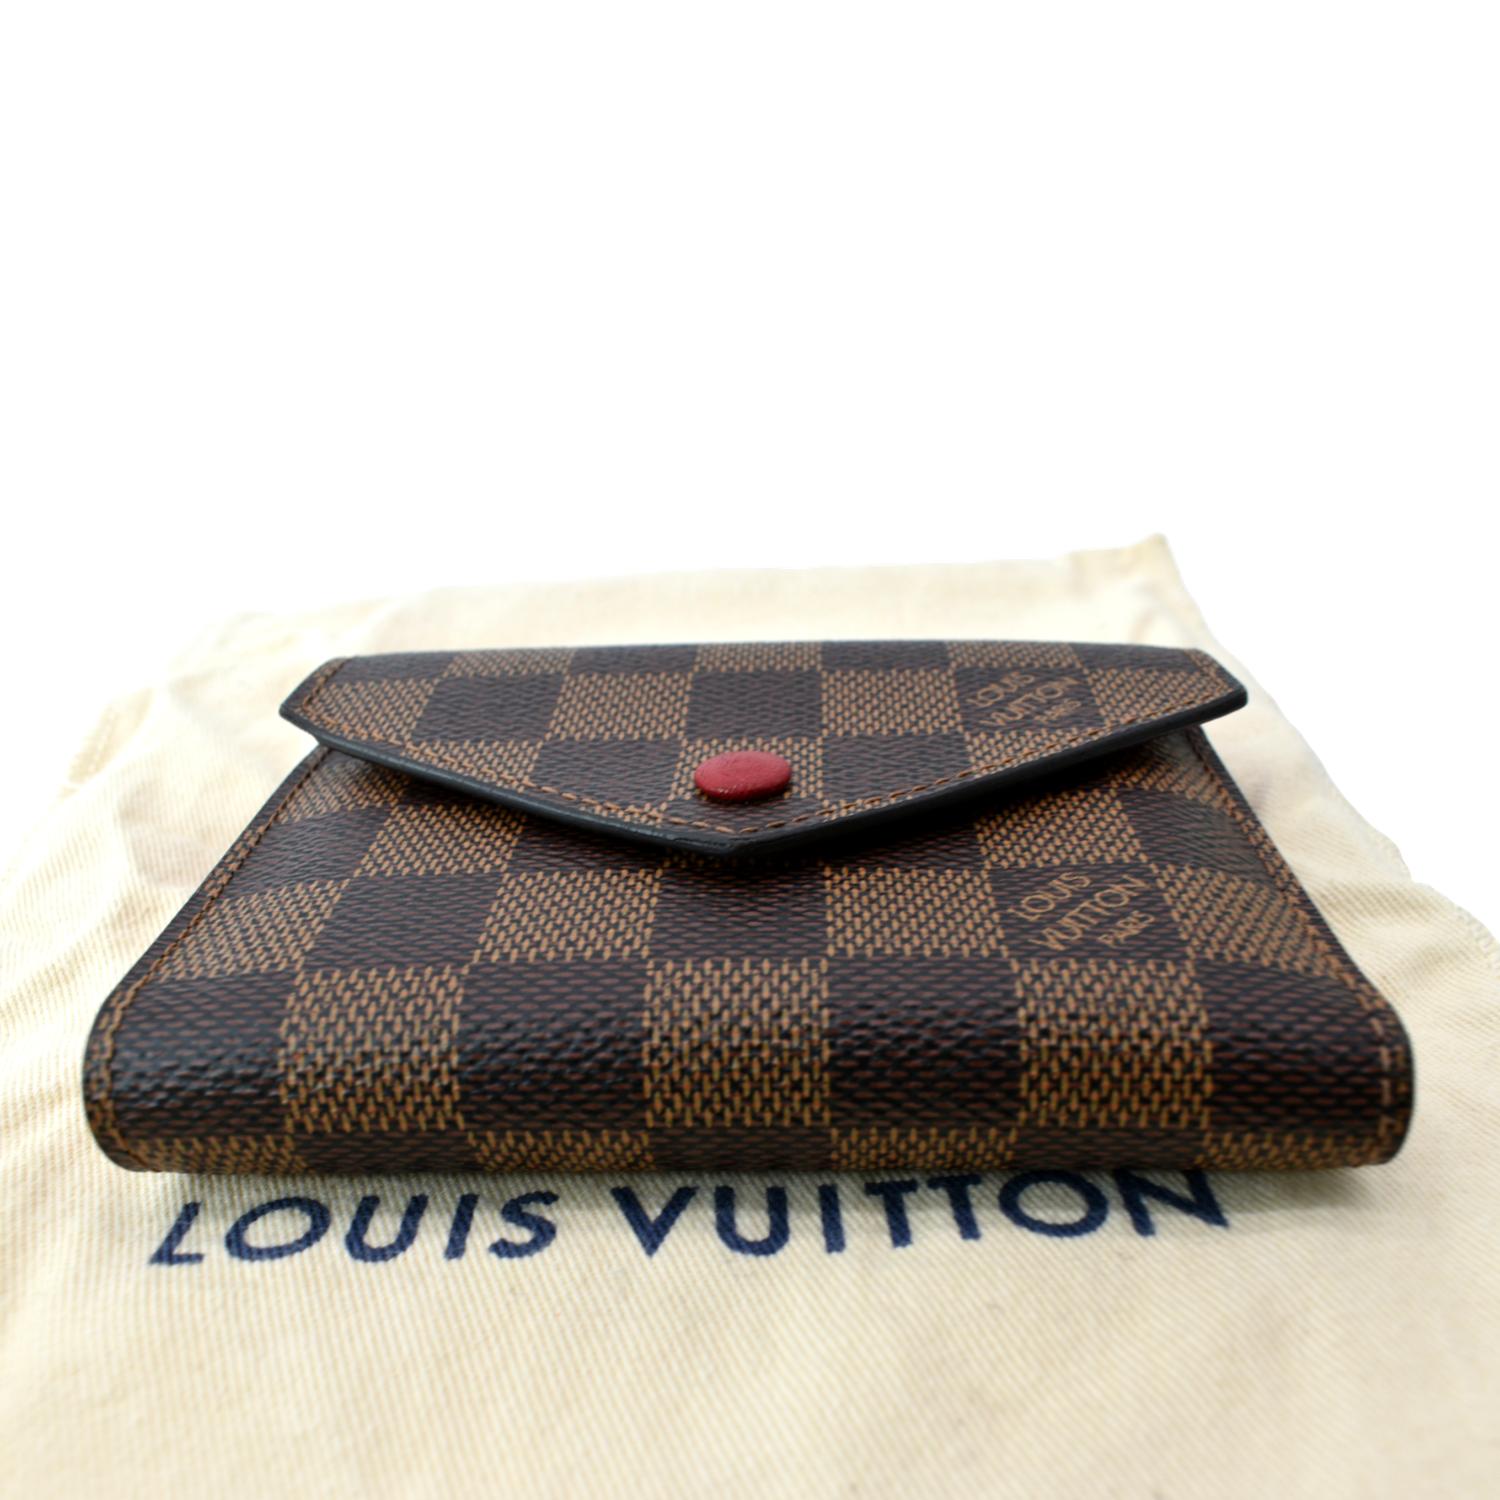 Louis Vuitton Victorine Wallet Red Damier Ebene